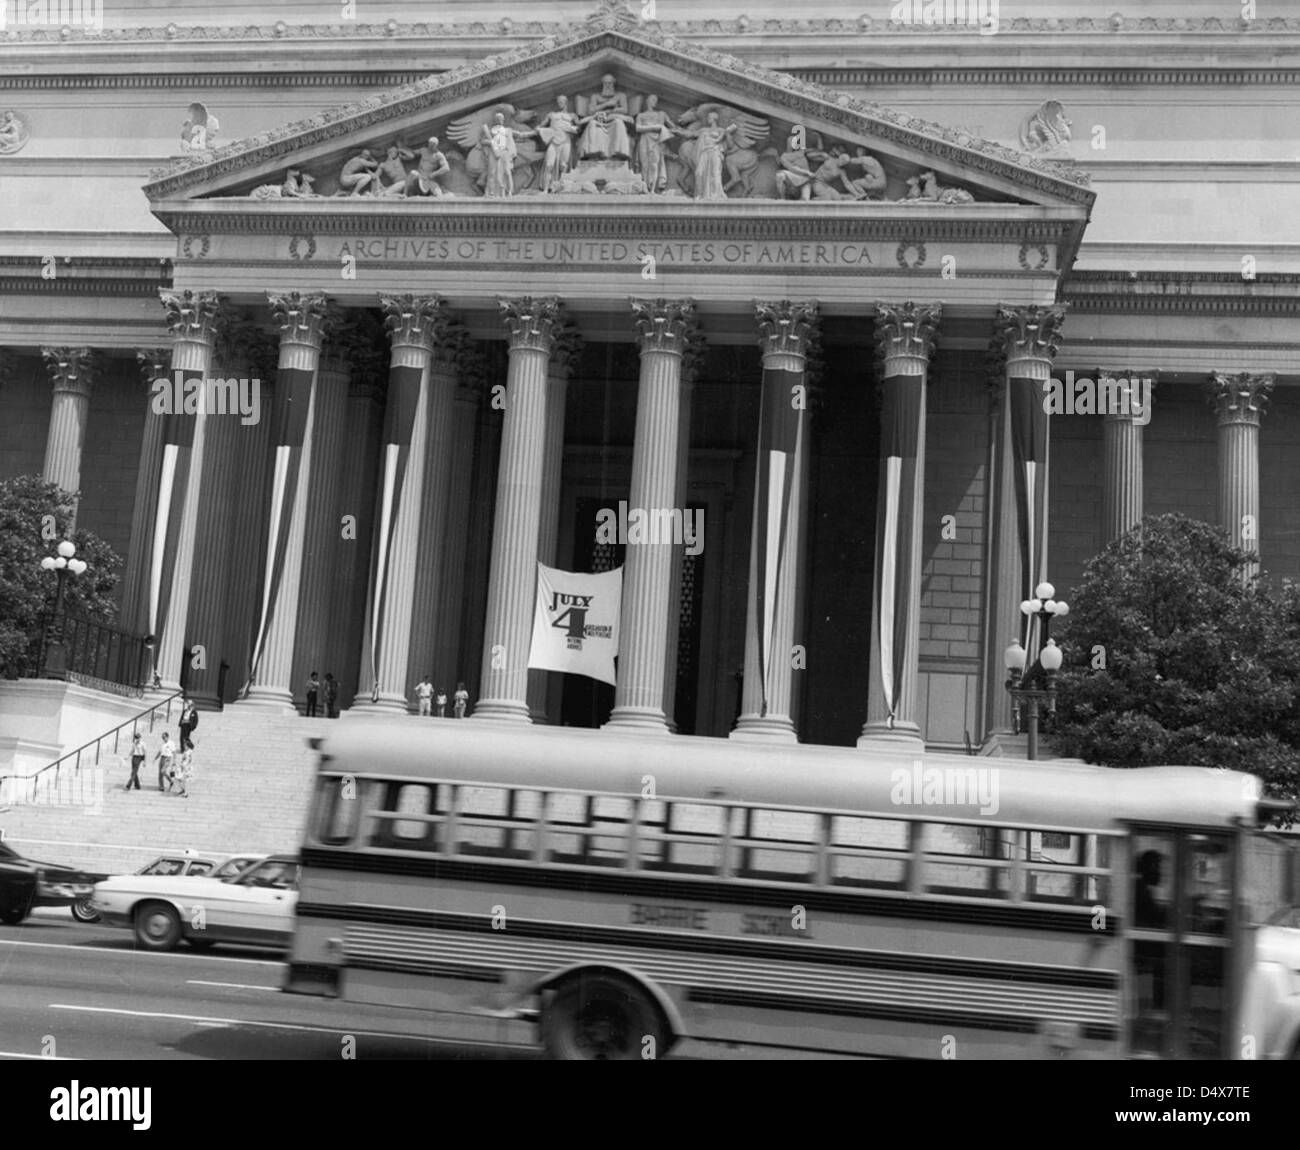 Il 4 luglio cerimonie presso gli archivi nazionali, 1973 Foto Stock